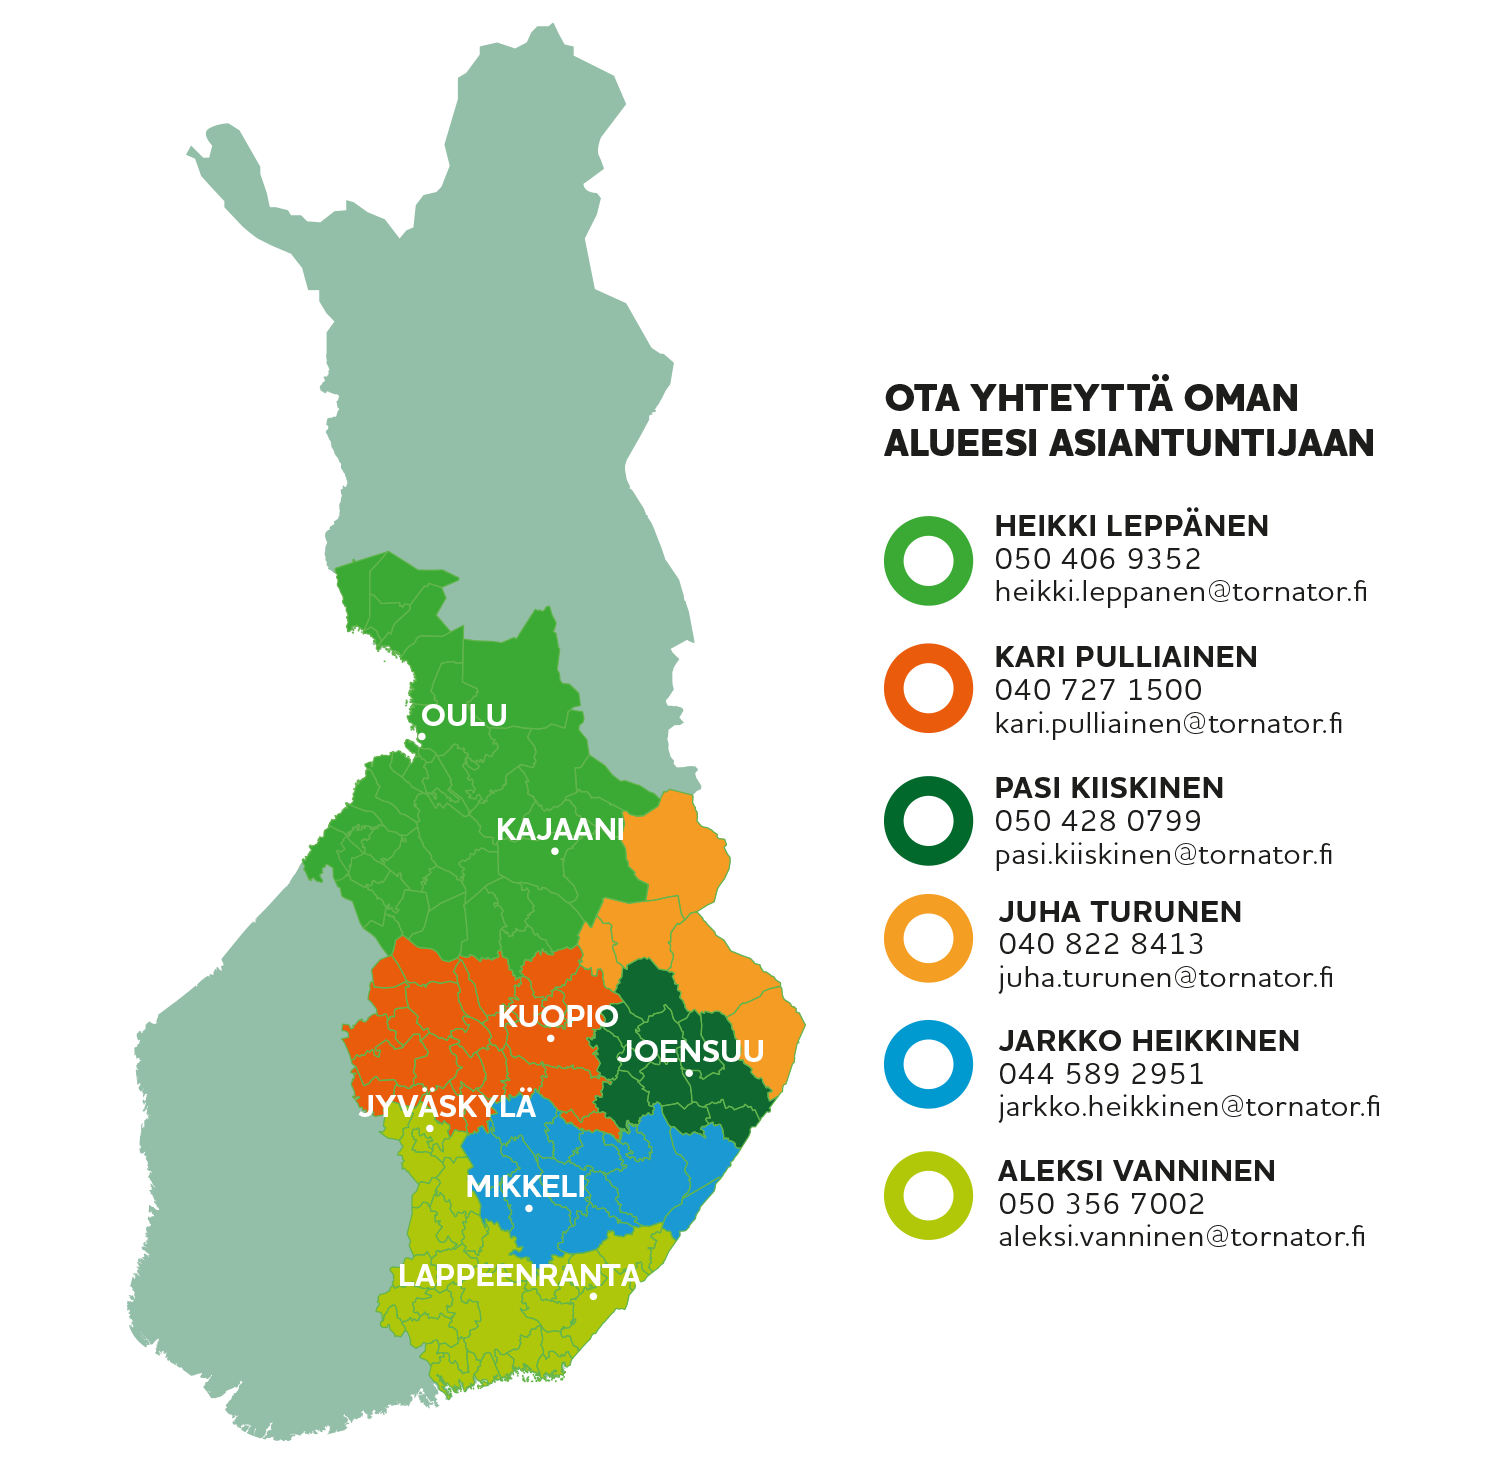 Suomen kartta, johon on merkitty Tornatorin ydinalueet: Pohjois- ja Etelä-Karjala, Pohjois- ja Etelä-Savo, Keski-Suomi, Kymenlaakso, Kainuun eteläosa sekä Oulun ja Kemin seutu.